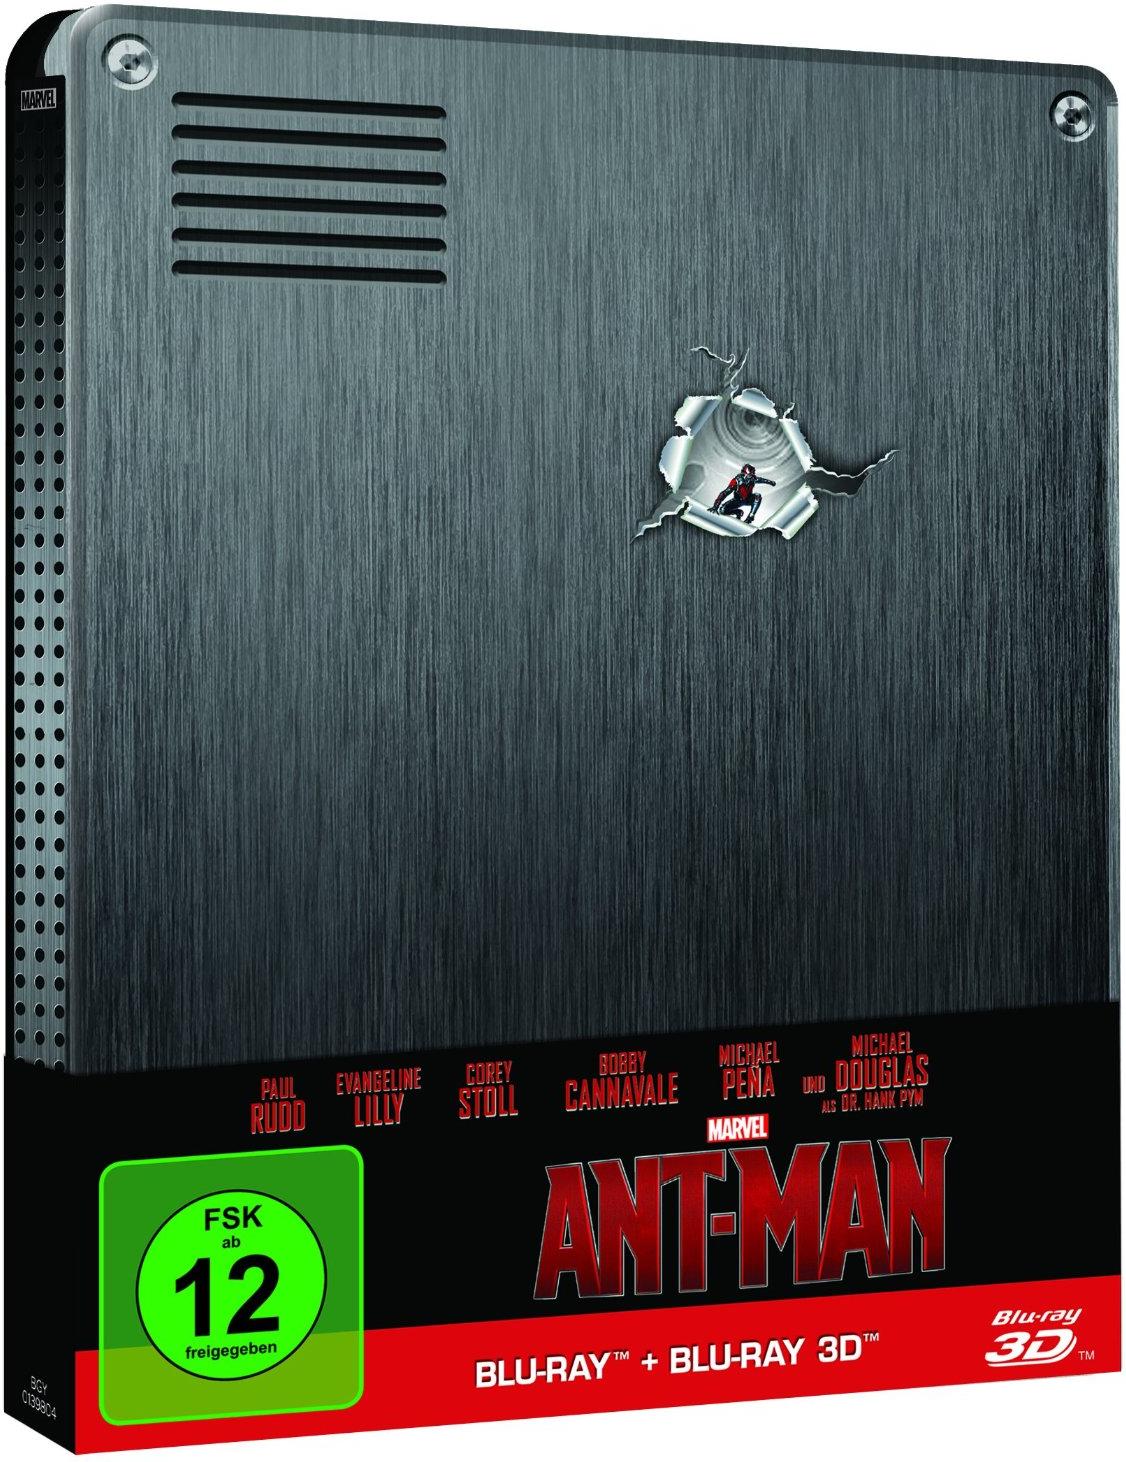 Ant-Man Steelbook